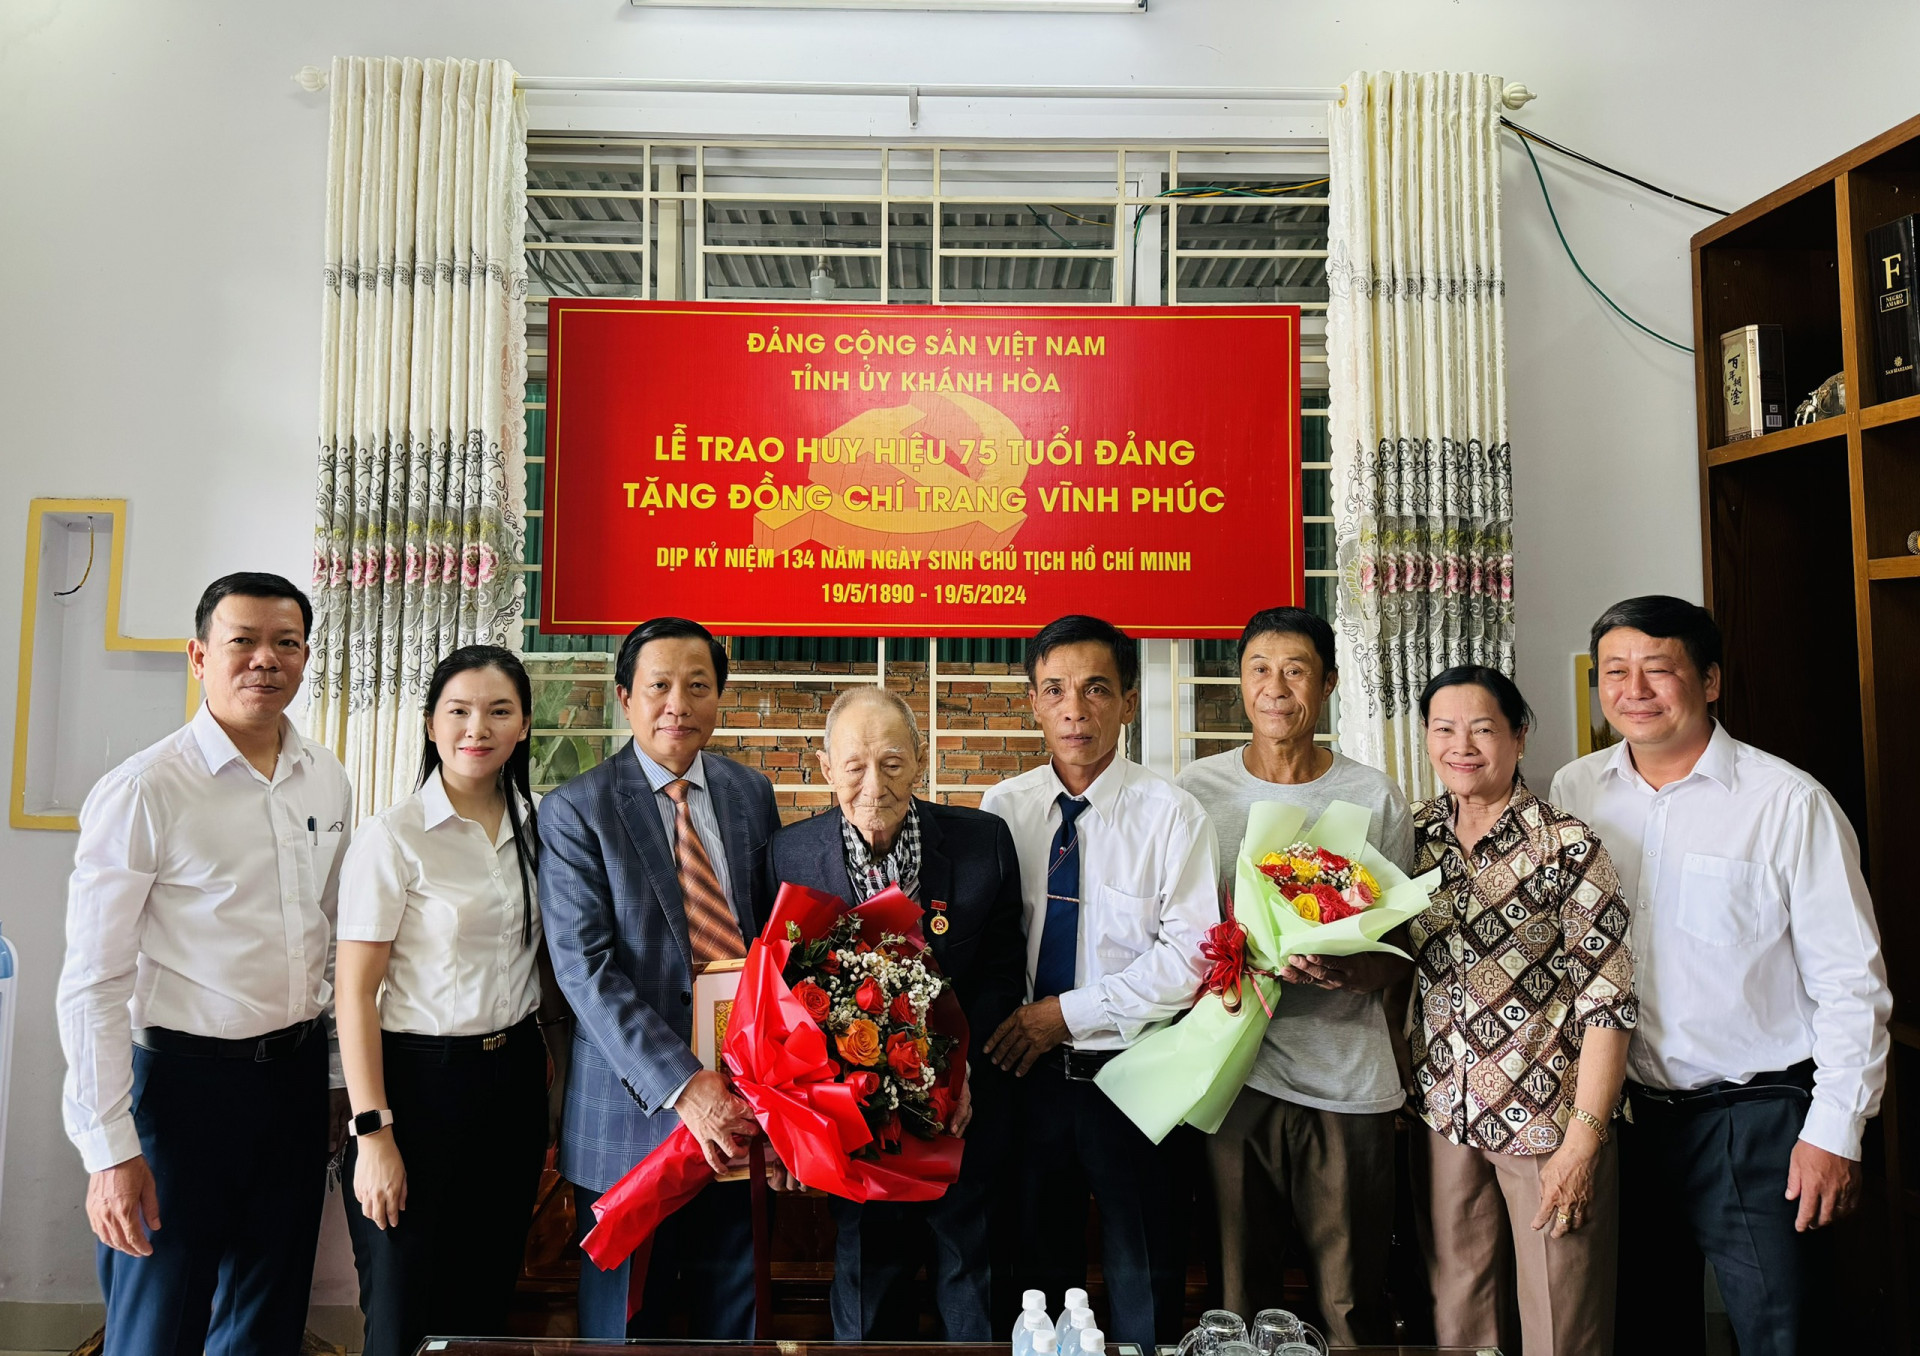 Đồng chí Hà Quốc Trị trao Huy hiệu 75 năm tuổi Đảng và chúc mừng đảng viên Trang Vĩnh Phúc